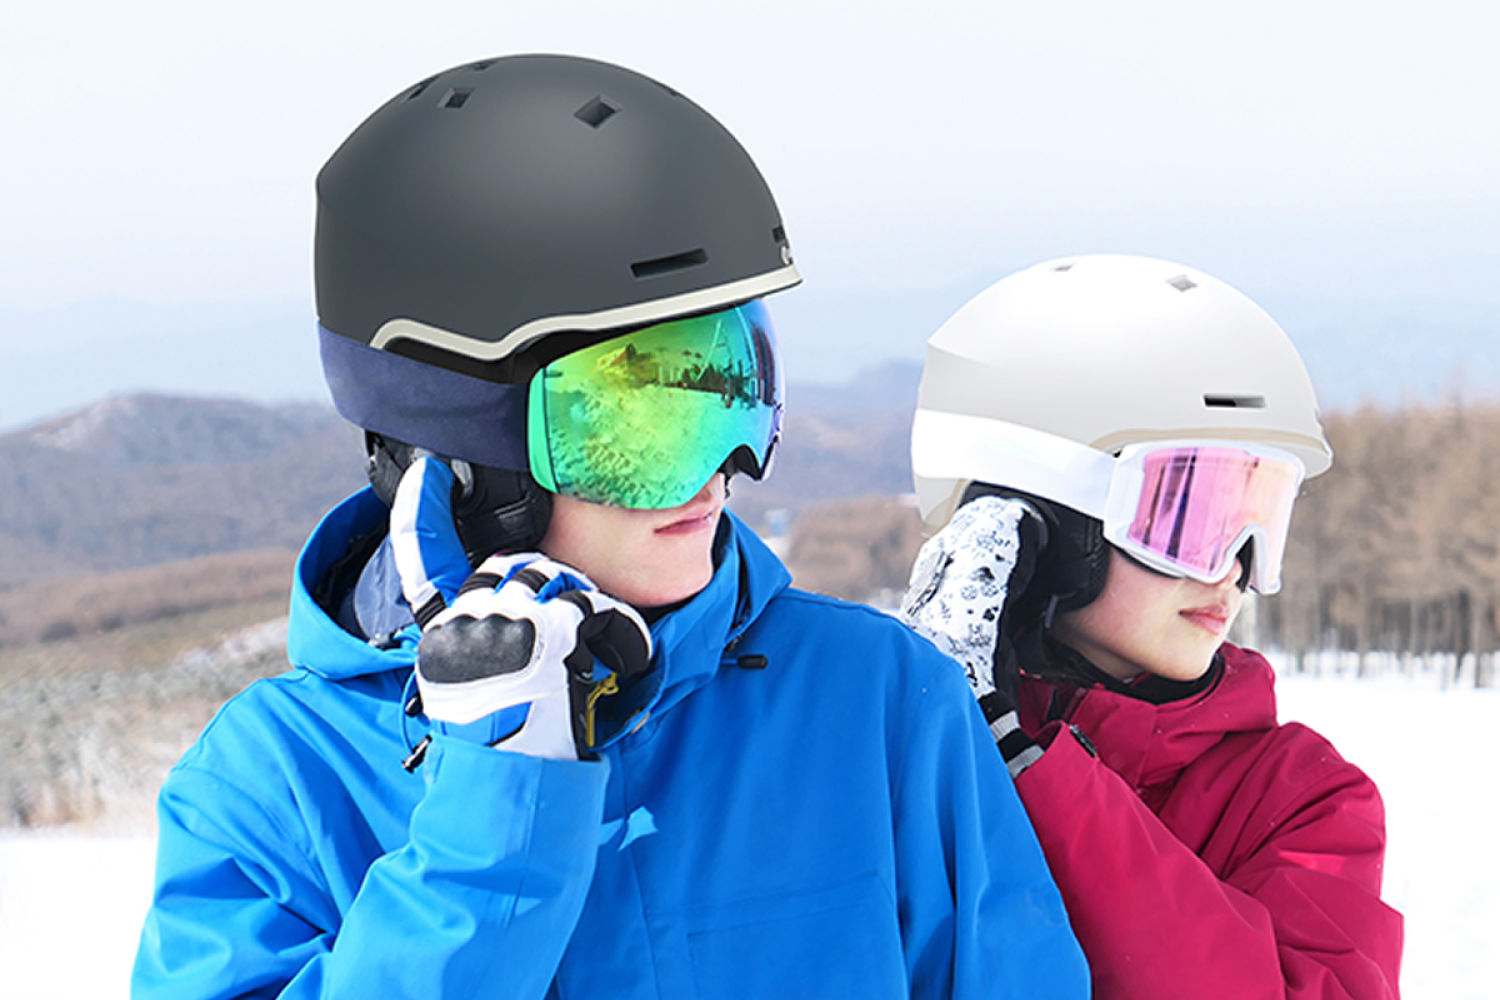 安全滑雪与清晰通话兼顾，Smart4u滑雪头盔